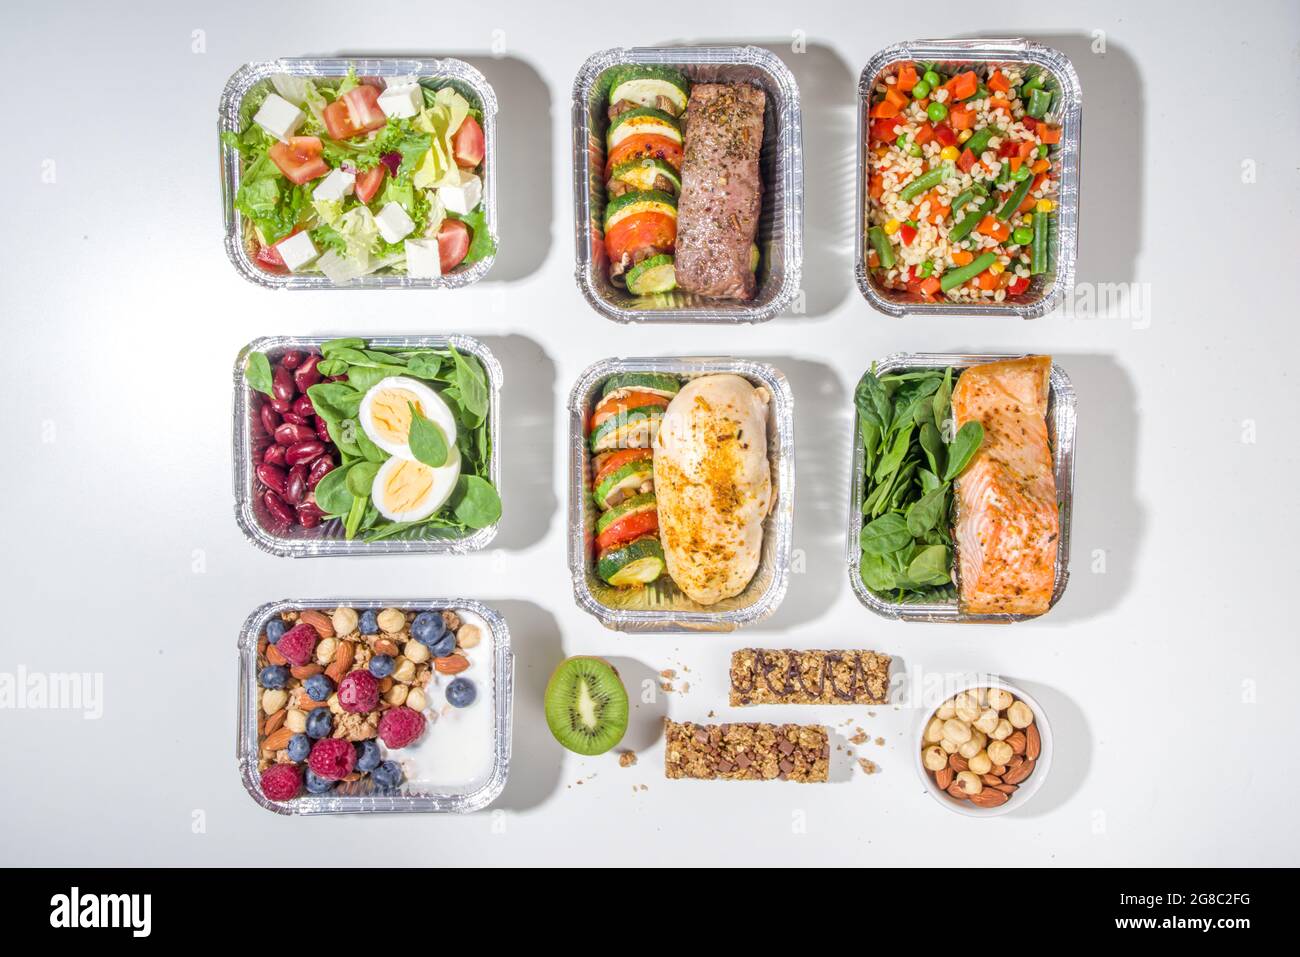 Gesunde Catering-Menü, Kurier-Food-Lieferung Lunch-Boxen. Rindersteak, Hühnerfilet, Fisch und Gemüse in Packungen. Tägliche Mahlzeit Diät-Plan Deliv Stockfoto